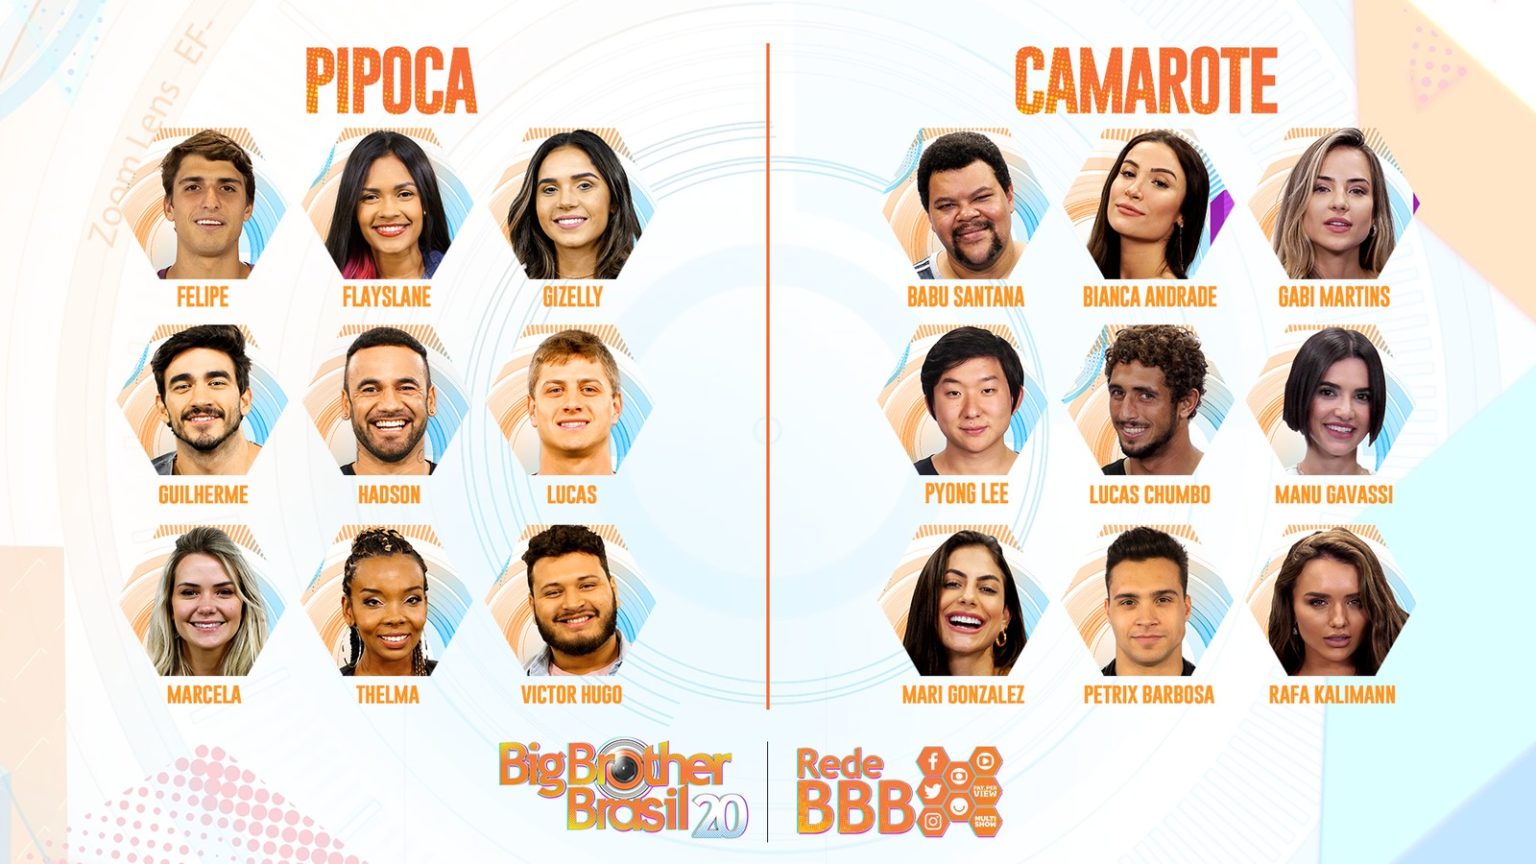 OFICIAL Lista com os participantes do Big Brother Brasil 20 Virou Pauta